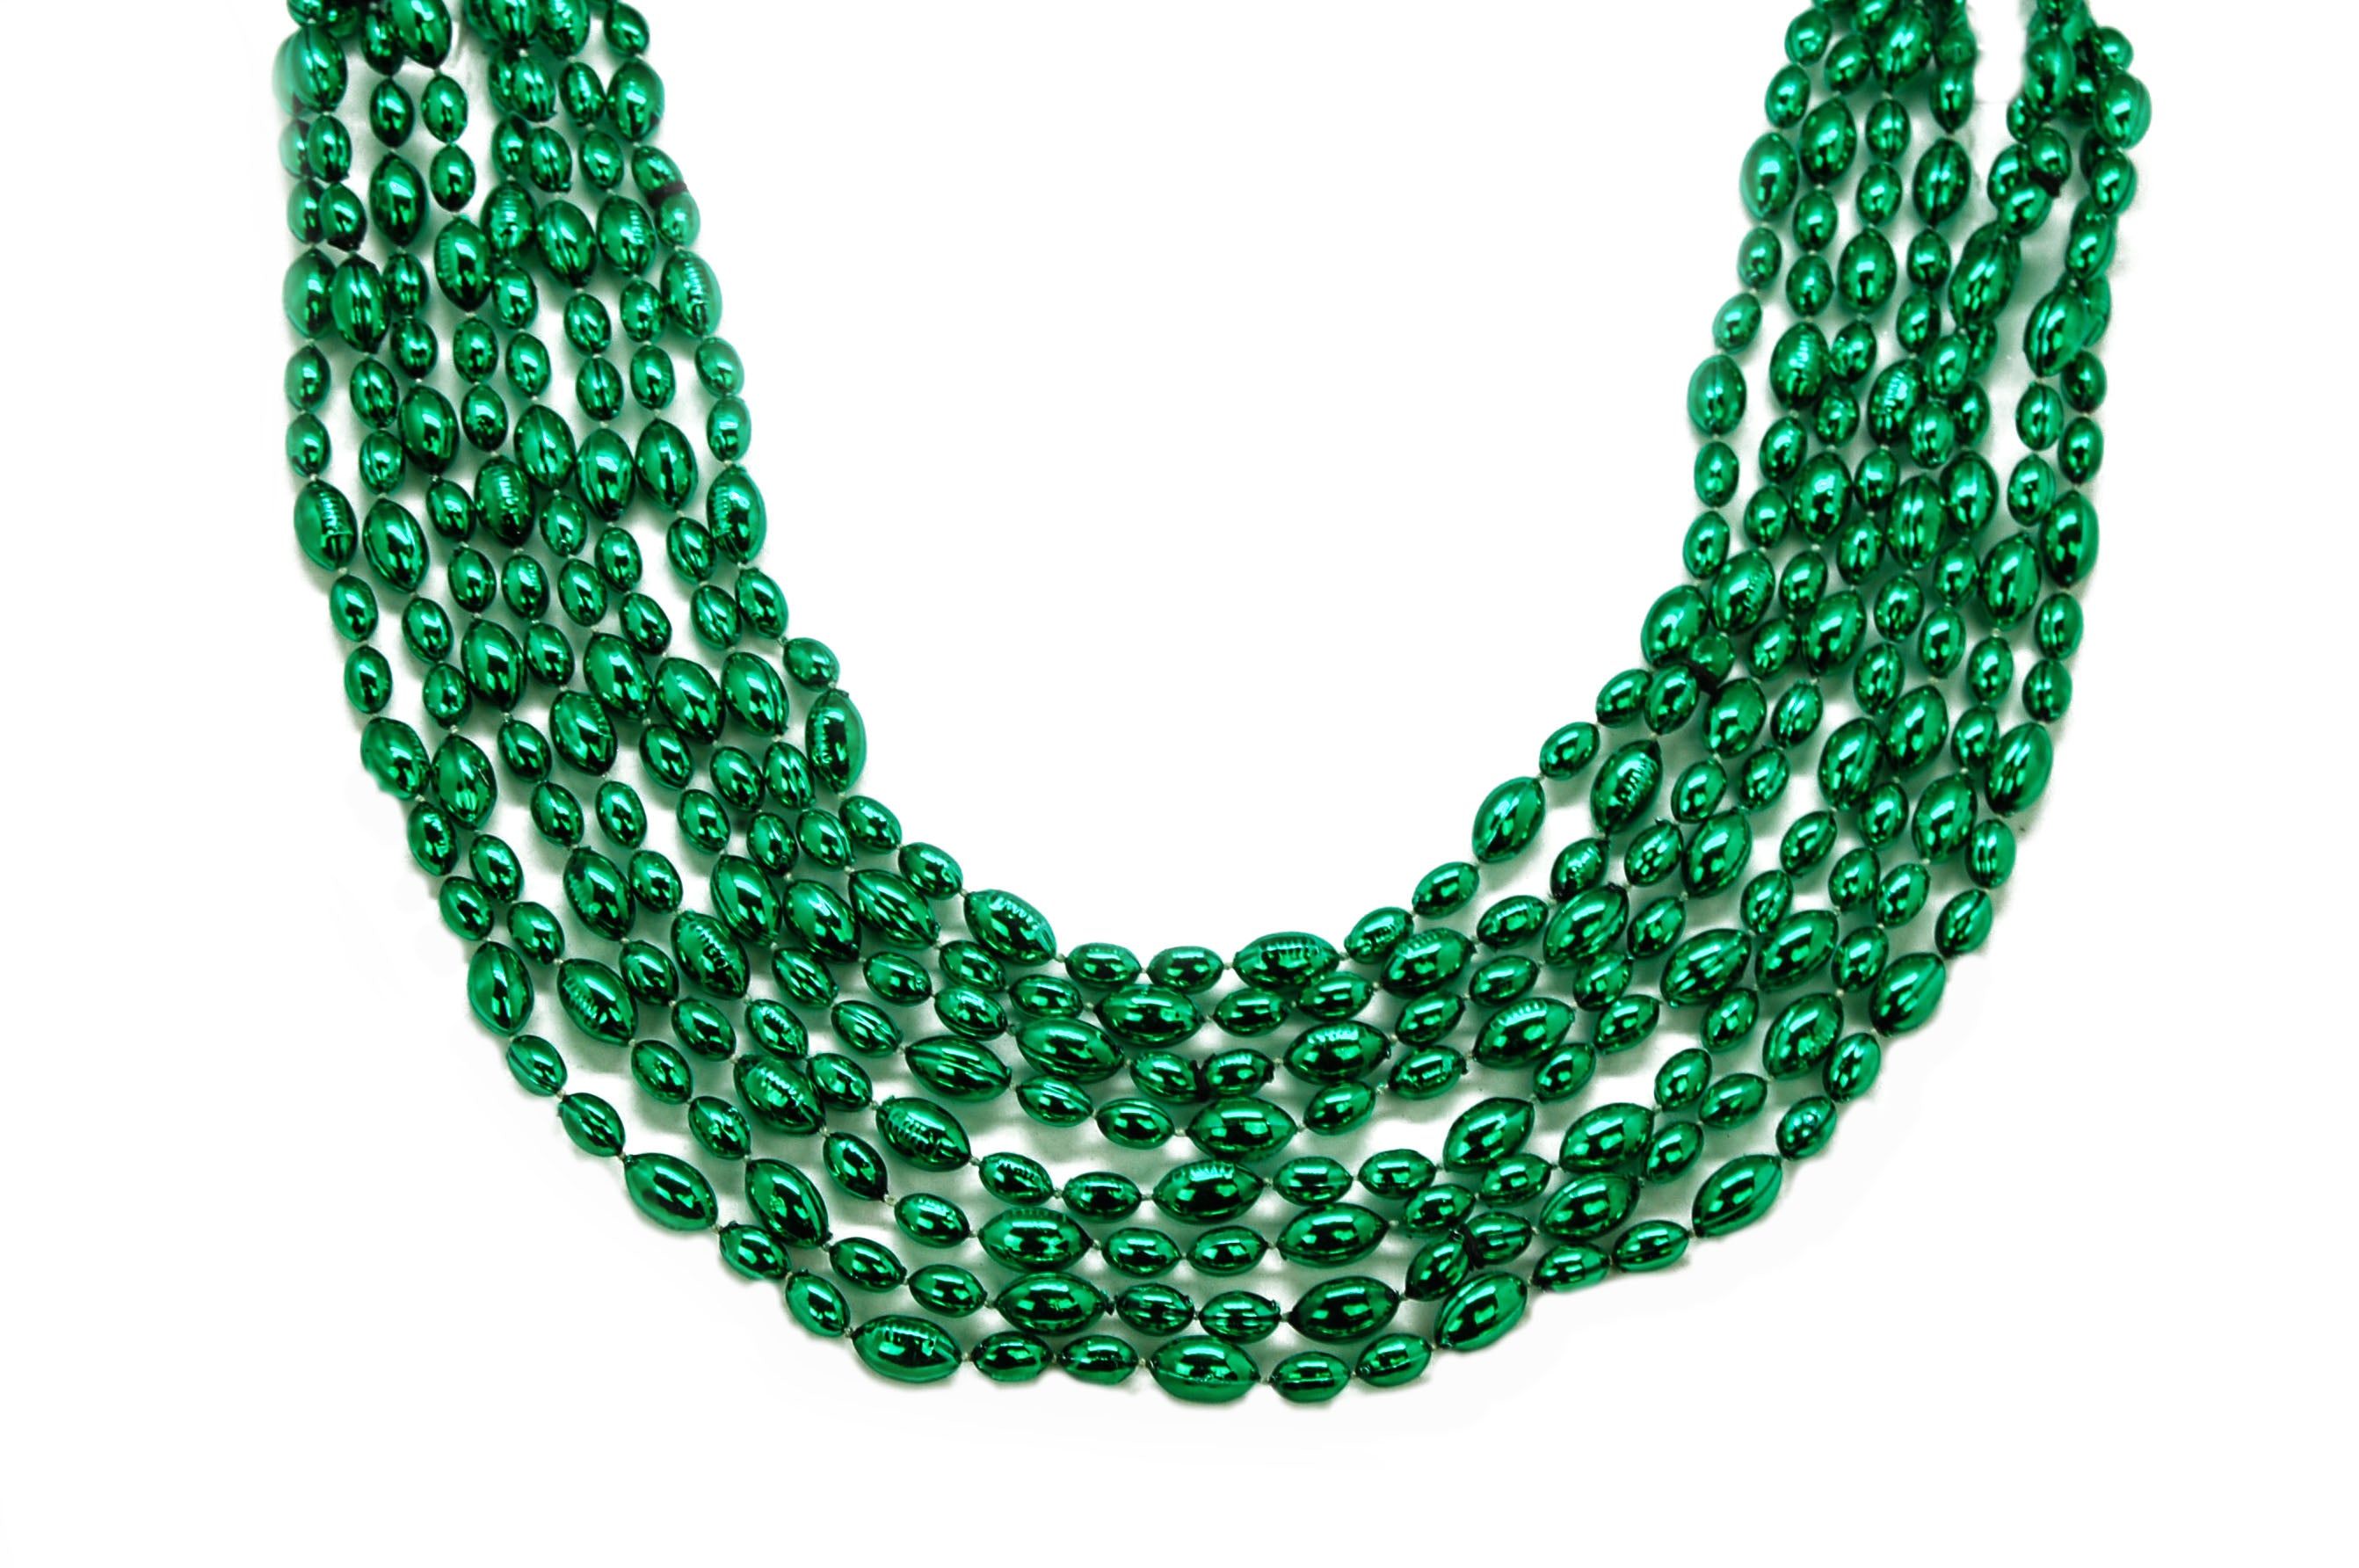 33 Green Football Beads